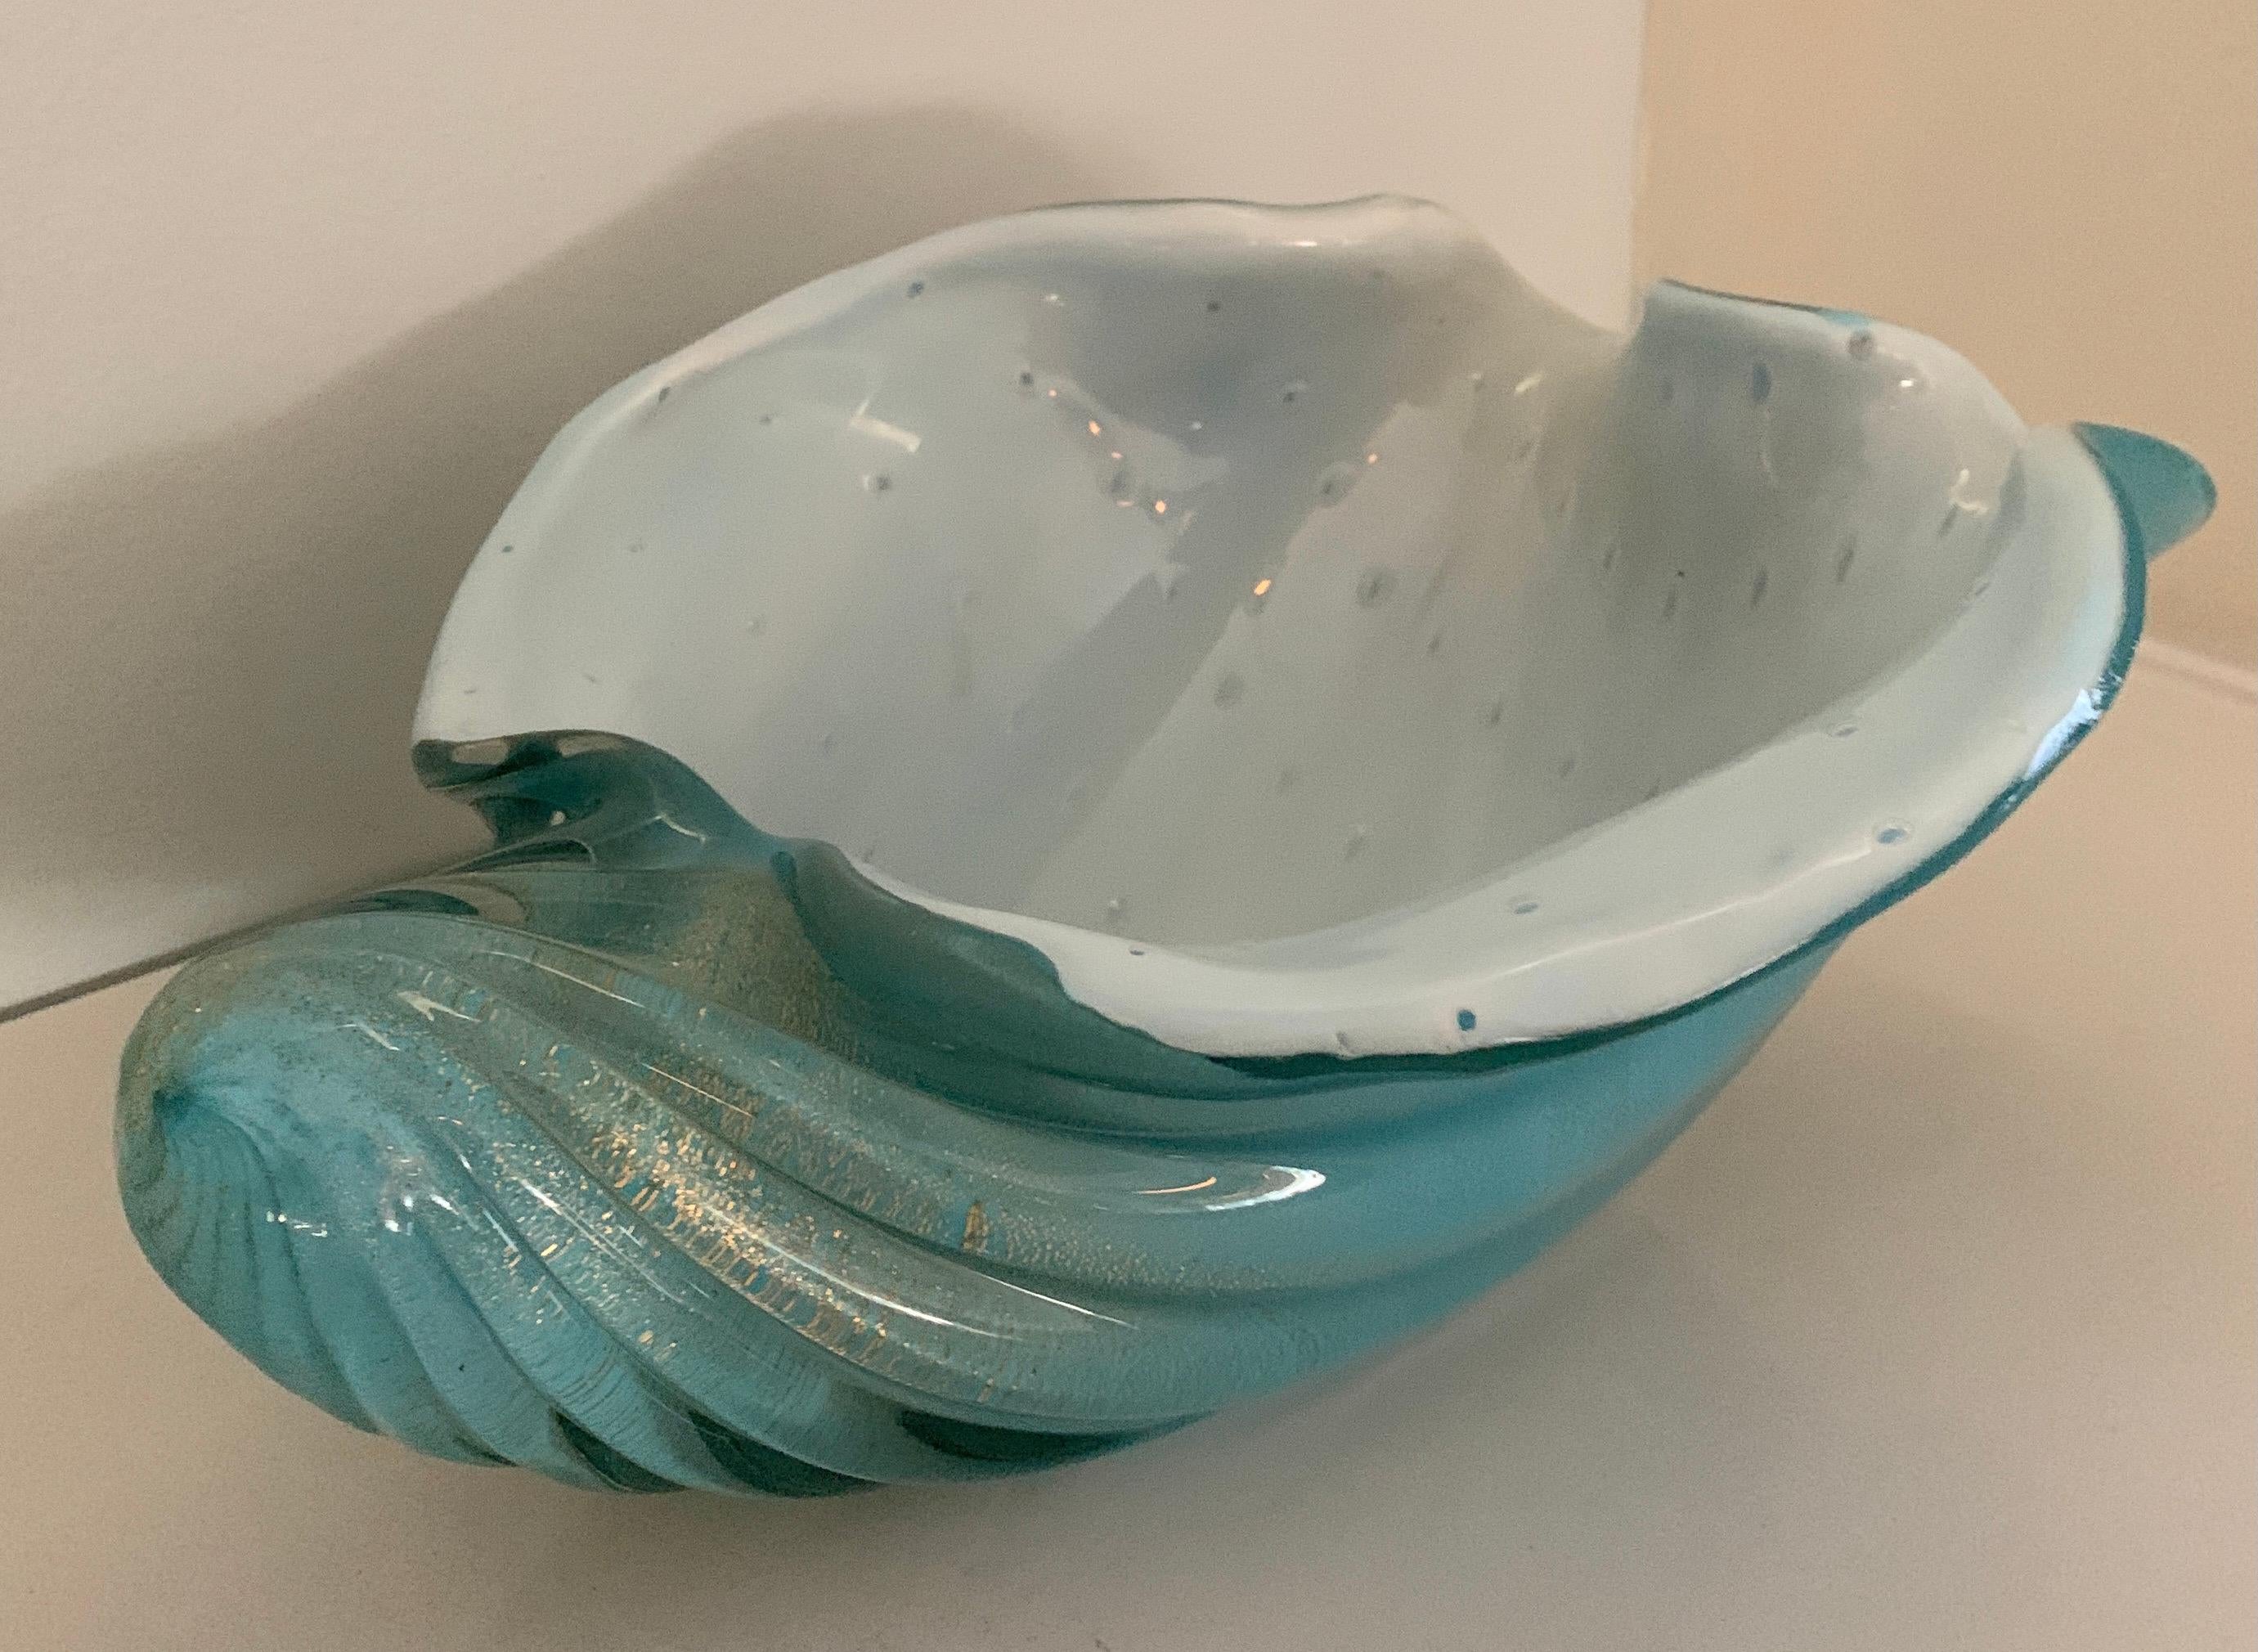 D'une belle nuance de bleu, ce bol en verre de Murano est une merveilleuse pièce décorative à part entière ou à utiliser comme pièce de service. Les mouchetures d'or ajoutent à l'apparence générale étonnante, en très bon état, sans éclats ni